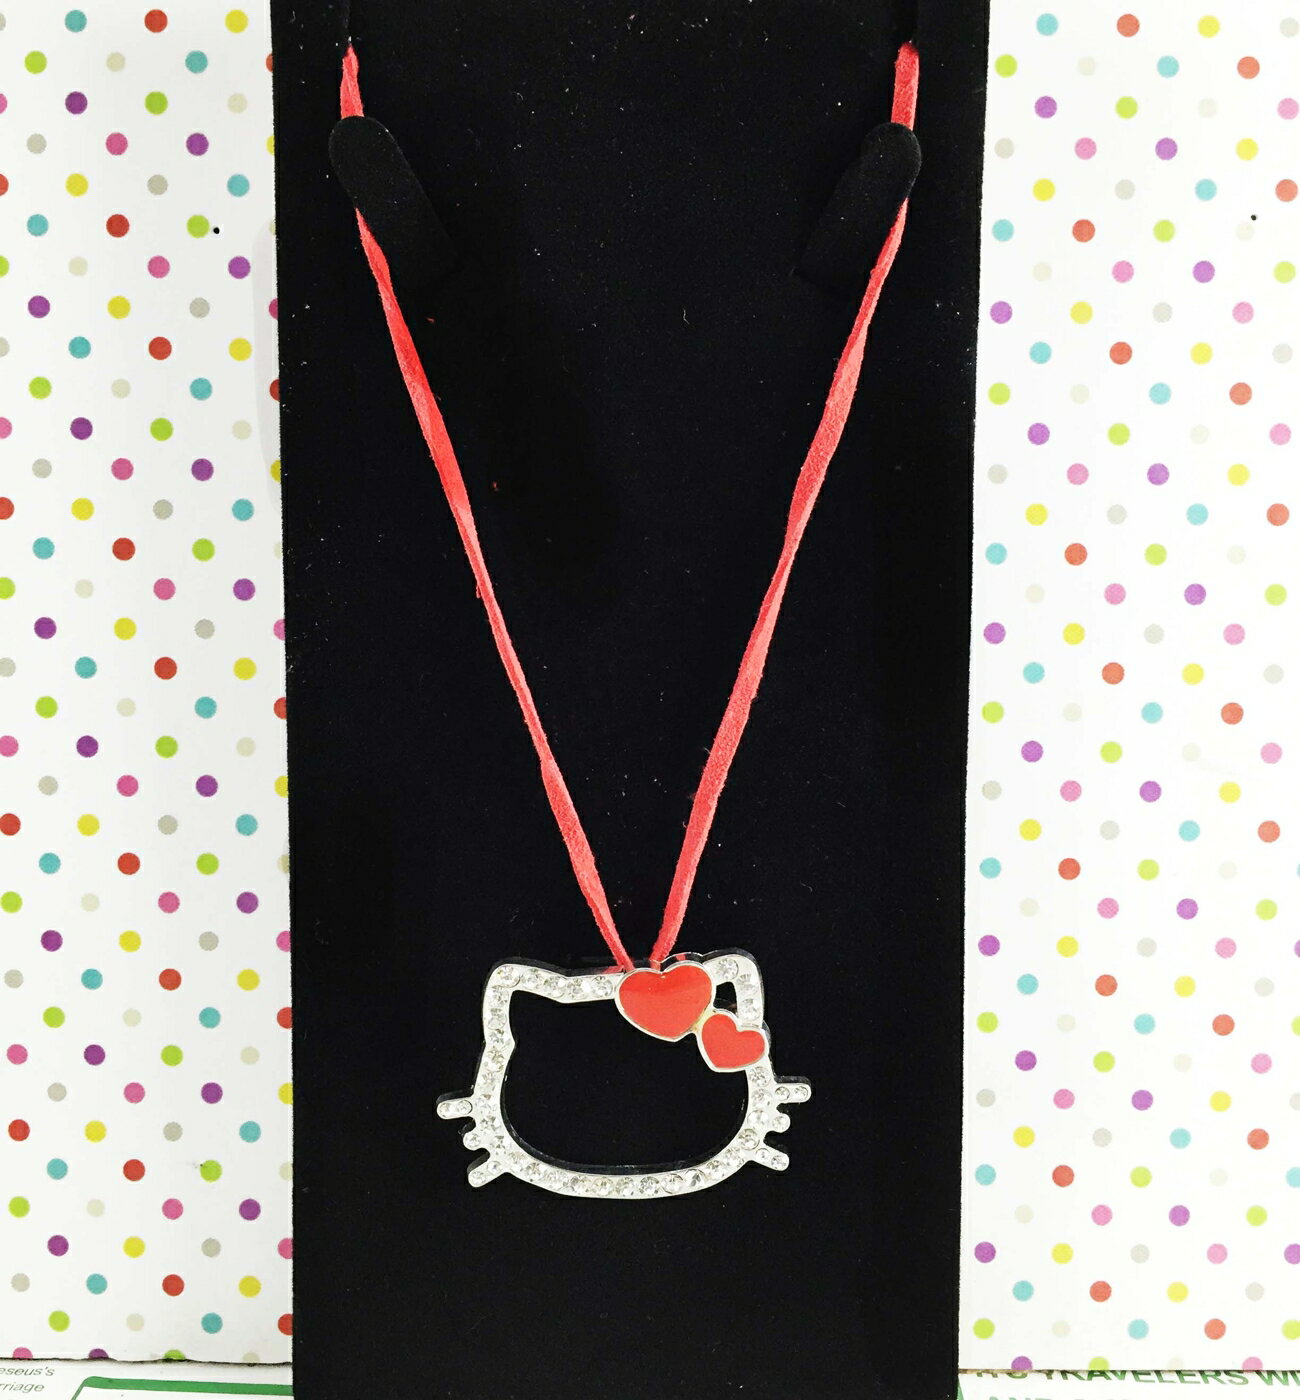 【震撼精品百貨】Hello Kitty 凱蒂貓 造型項鍊-紅 震撼日式精品百貨